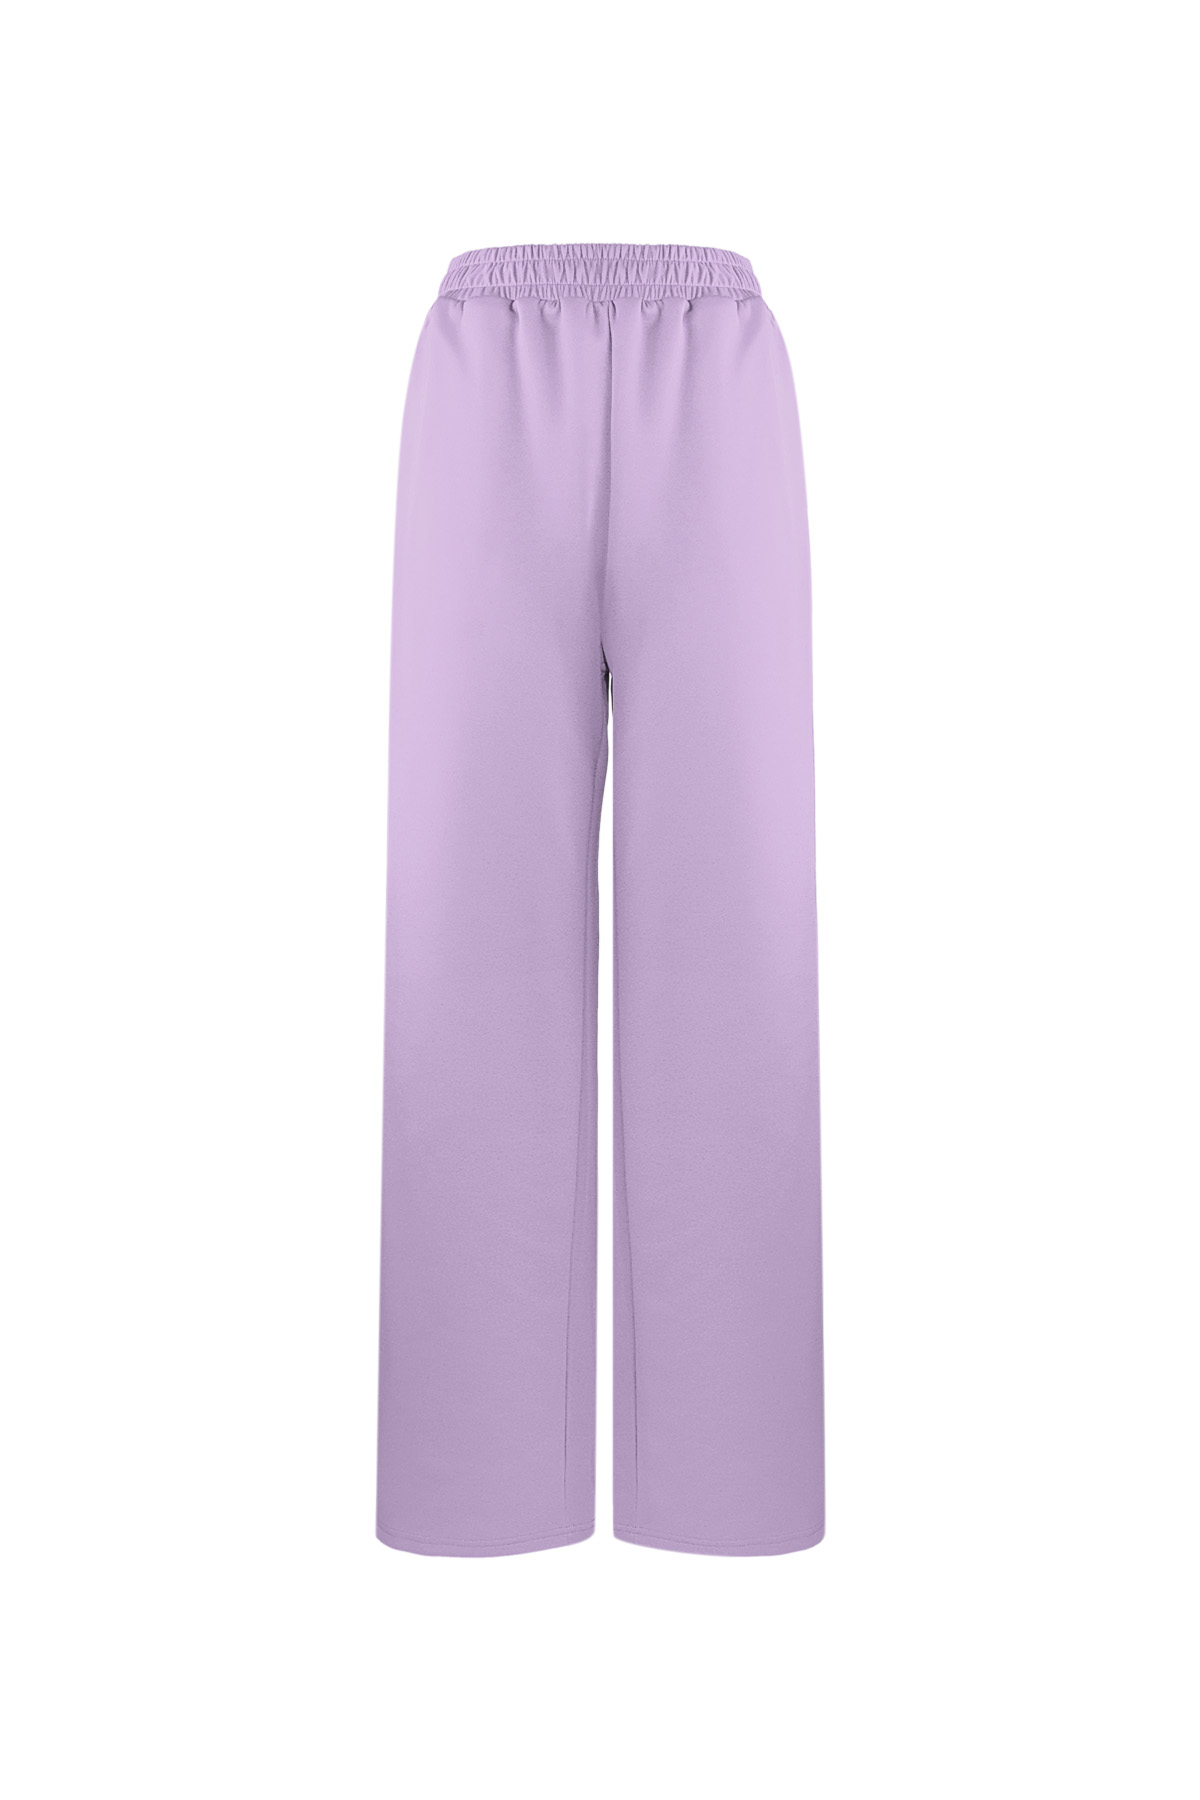 Pantalón imprescindible a rayas - violeta S h5 